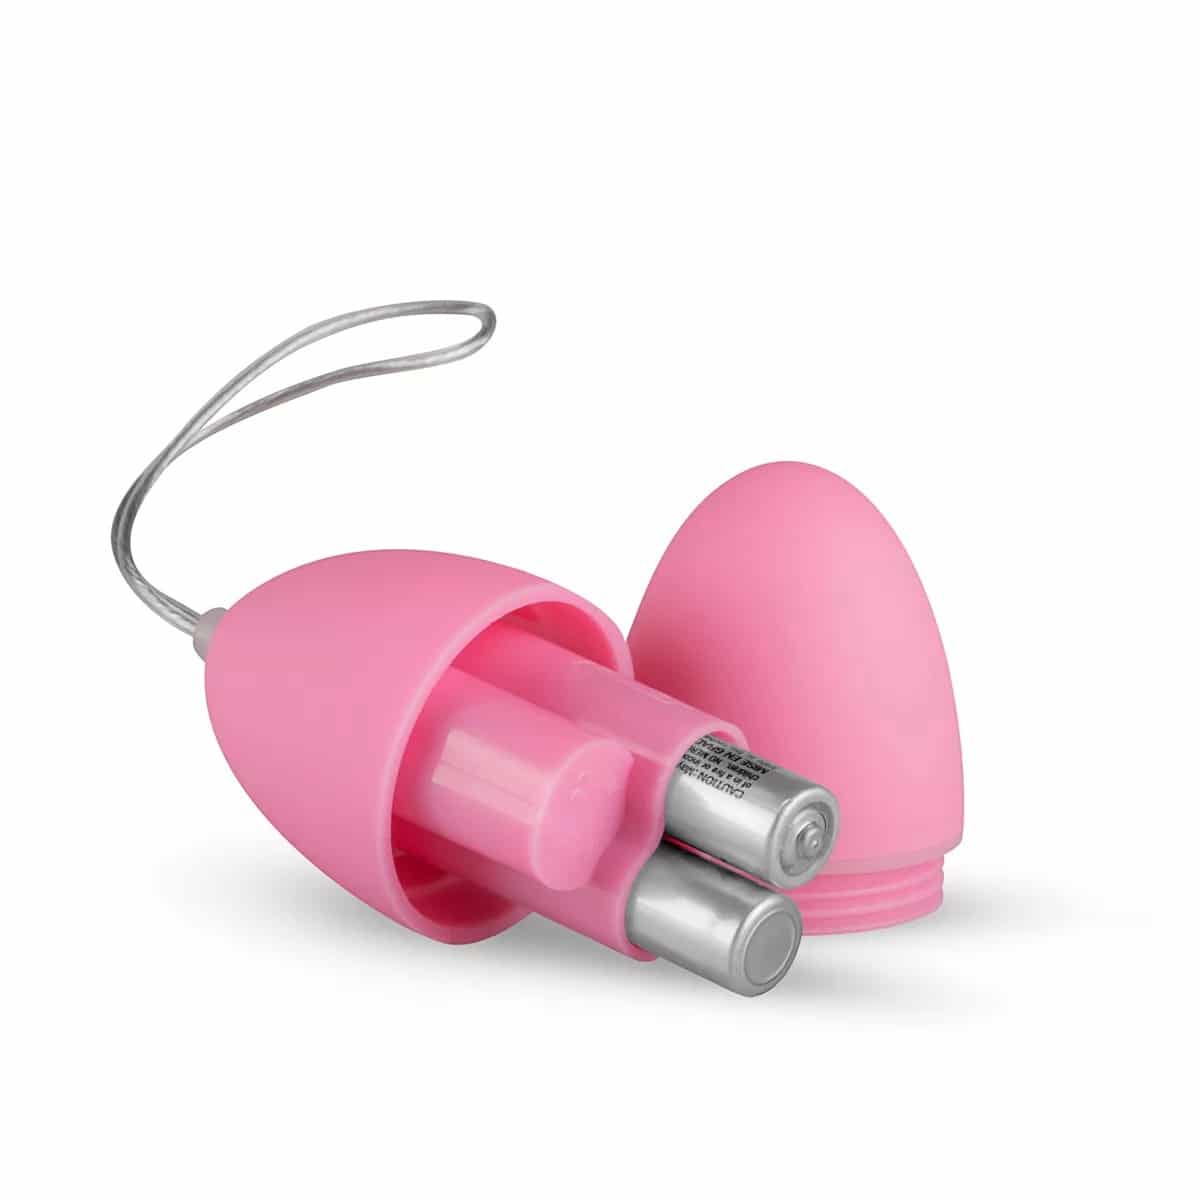 Liebeskugeln mit Vibration - Vibro-Ei in Pink. Slide 2